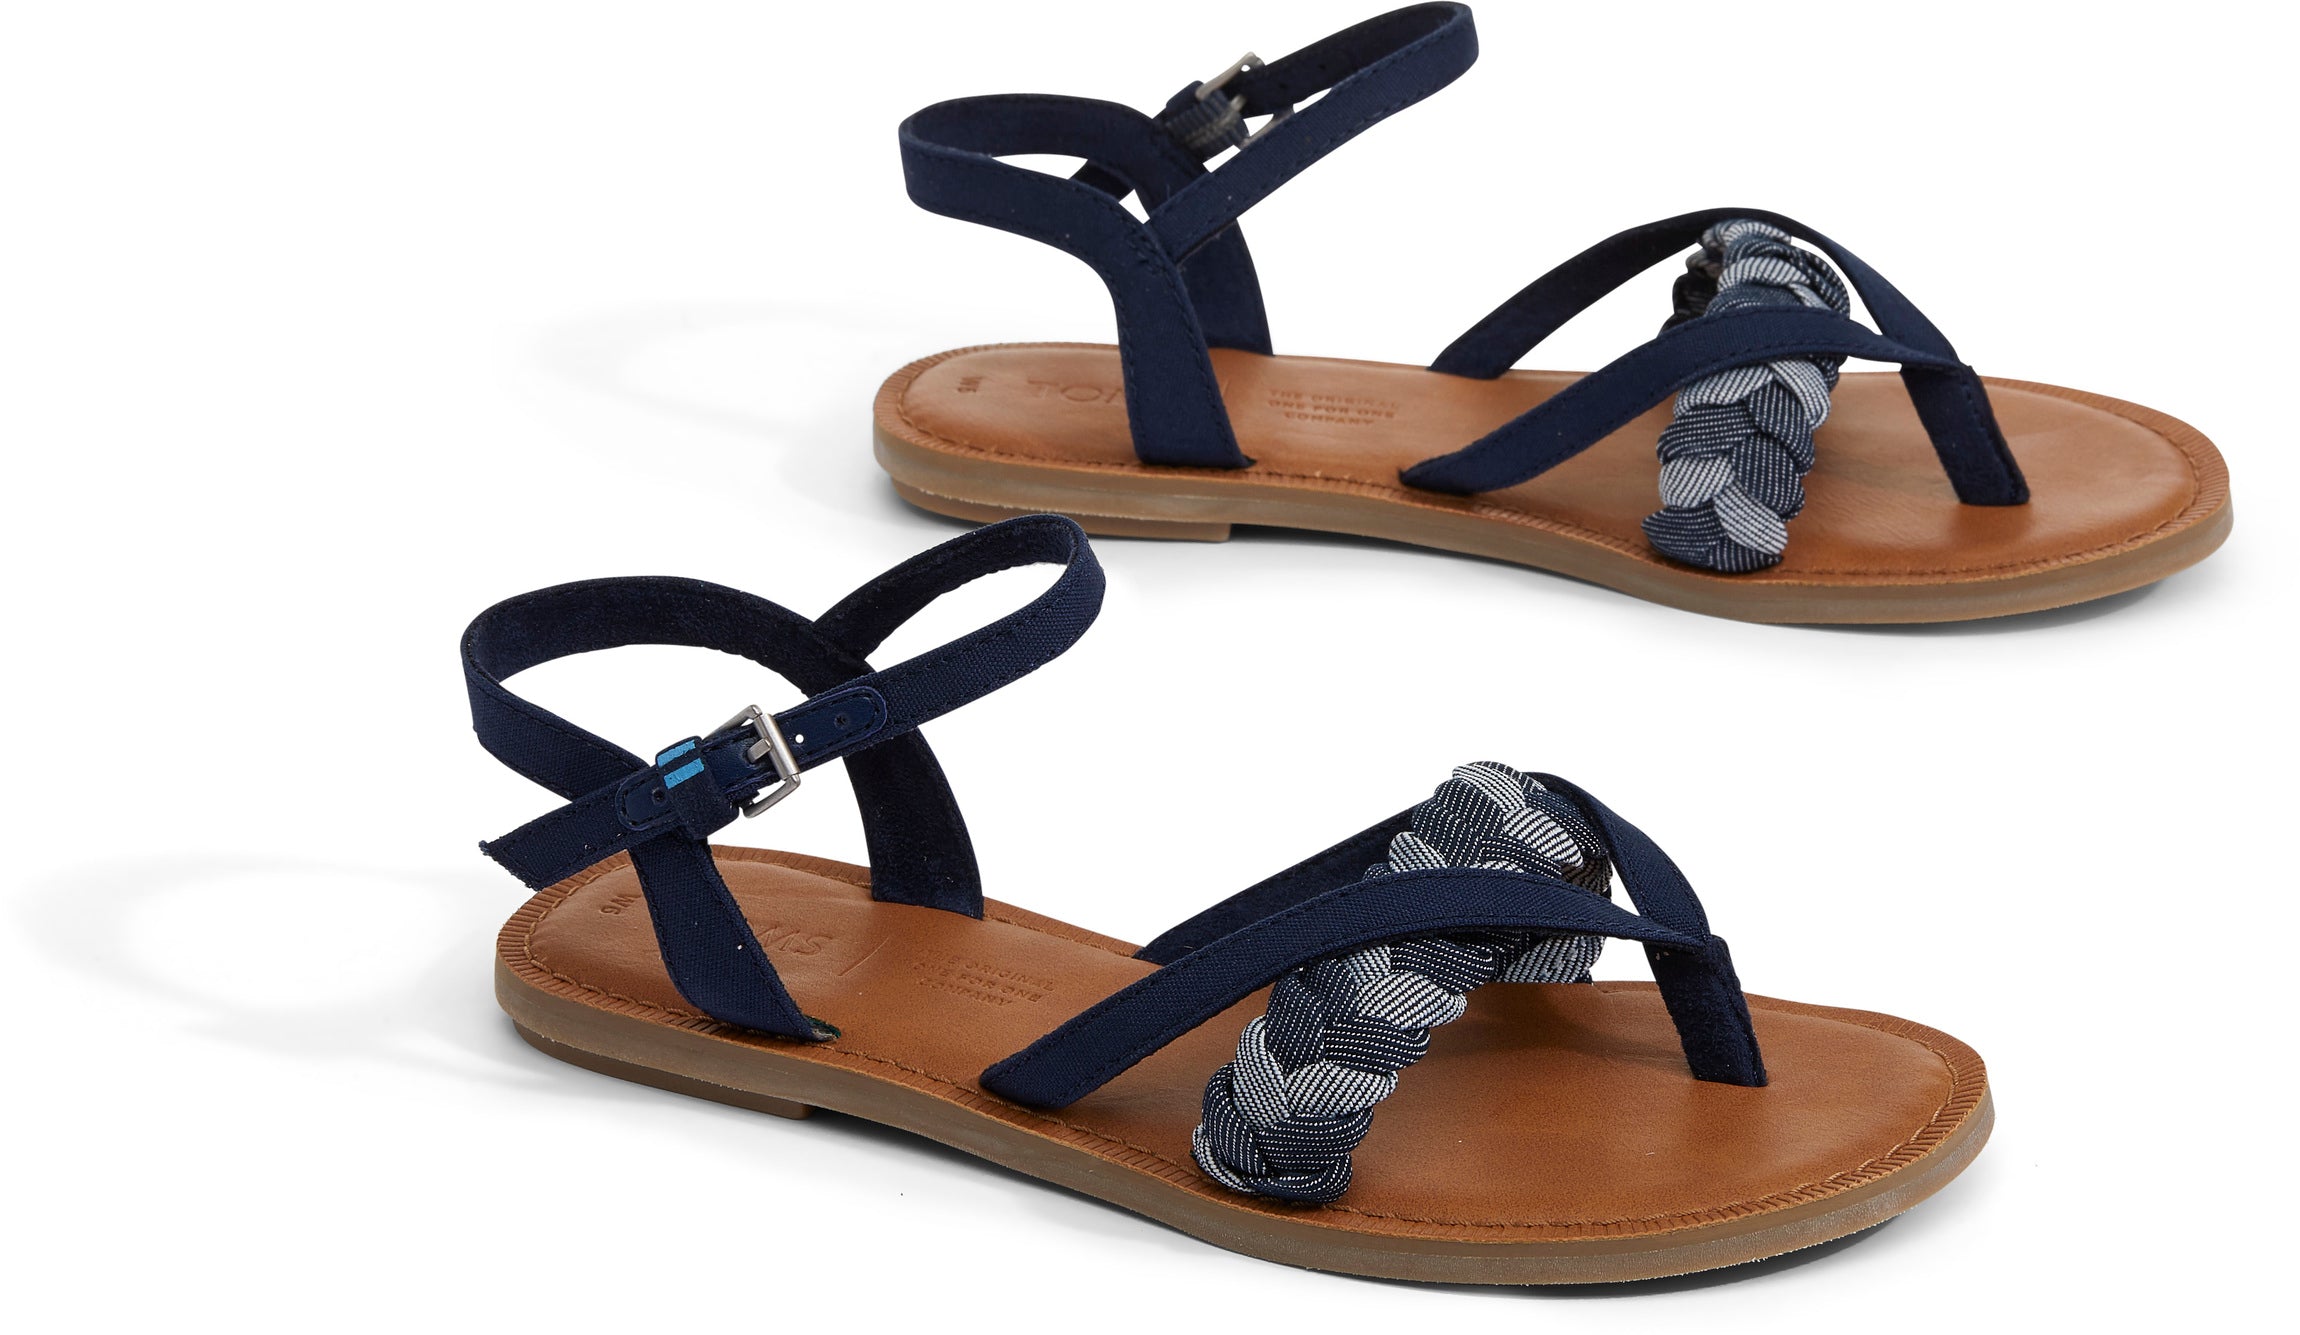 Dámské tmavě modré sandálky TOMS Lexie Sandals